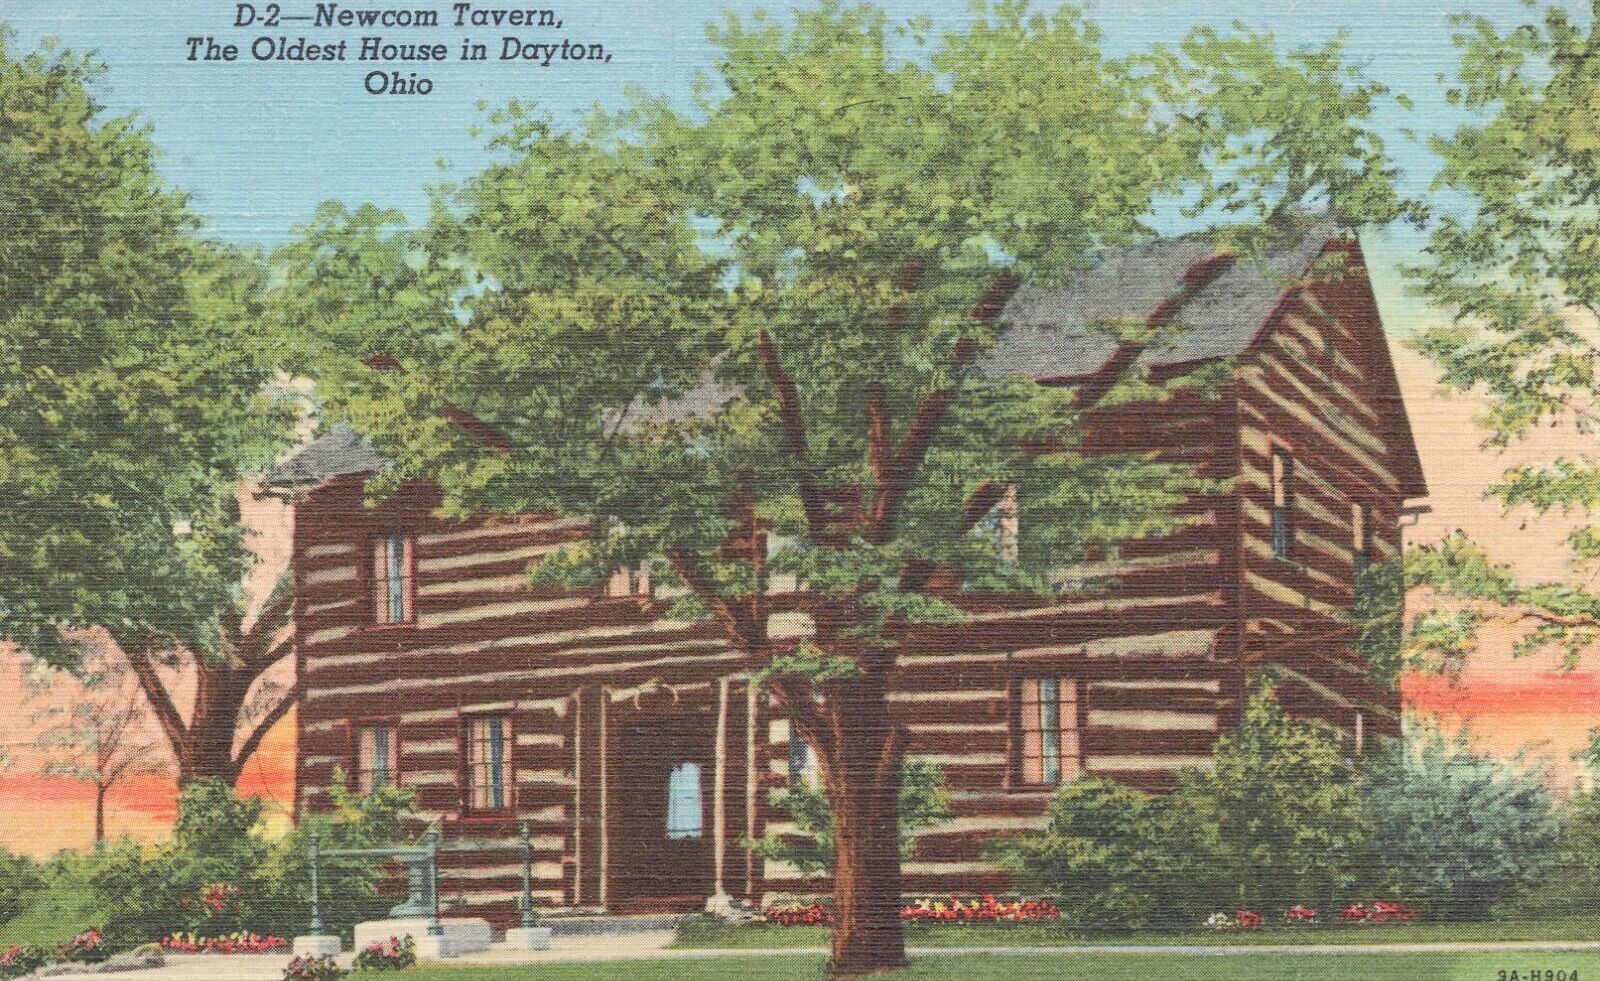 1949 Curt Teich Postcard-Newcom Tavern-Oldest House Dayton Ohio w/War Bond mark